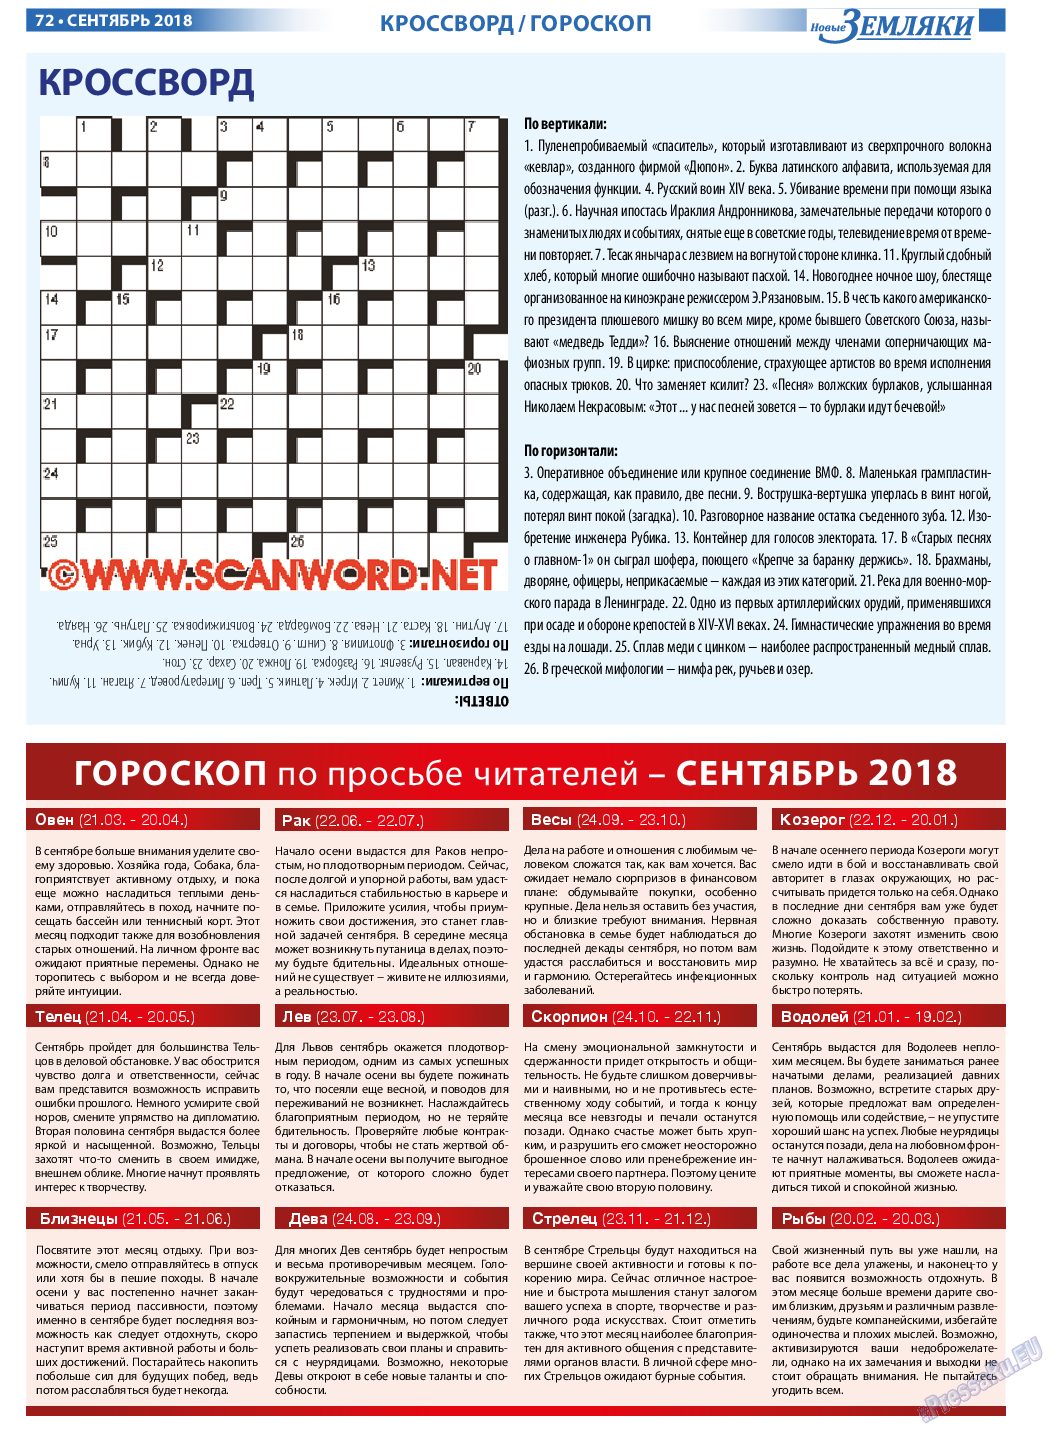 Новые Земляки, газета. 2018 №9 стр.72